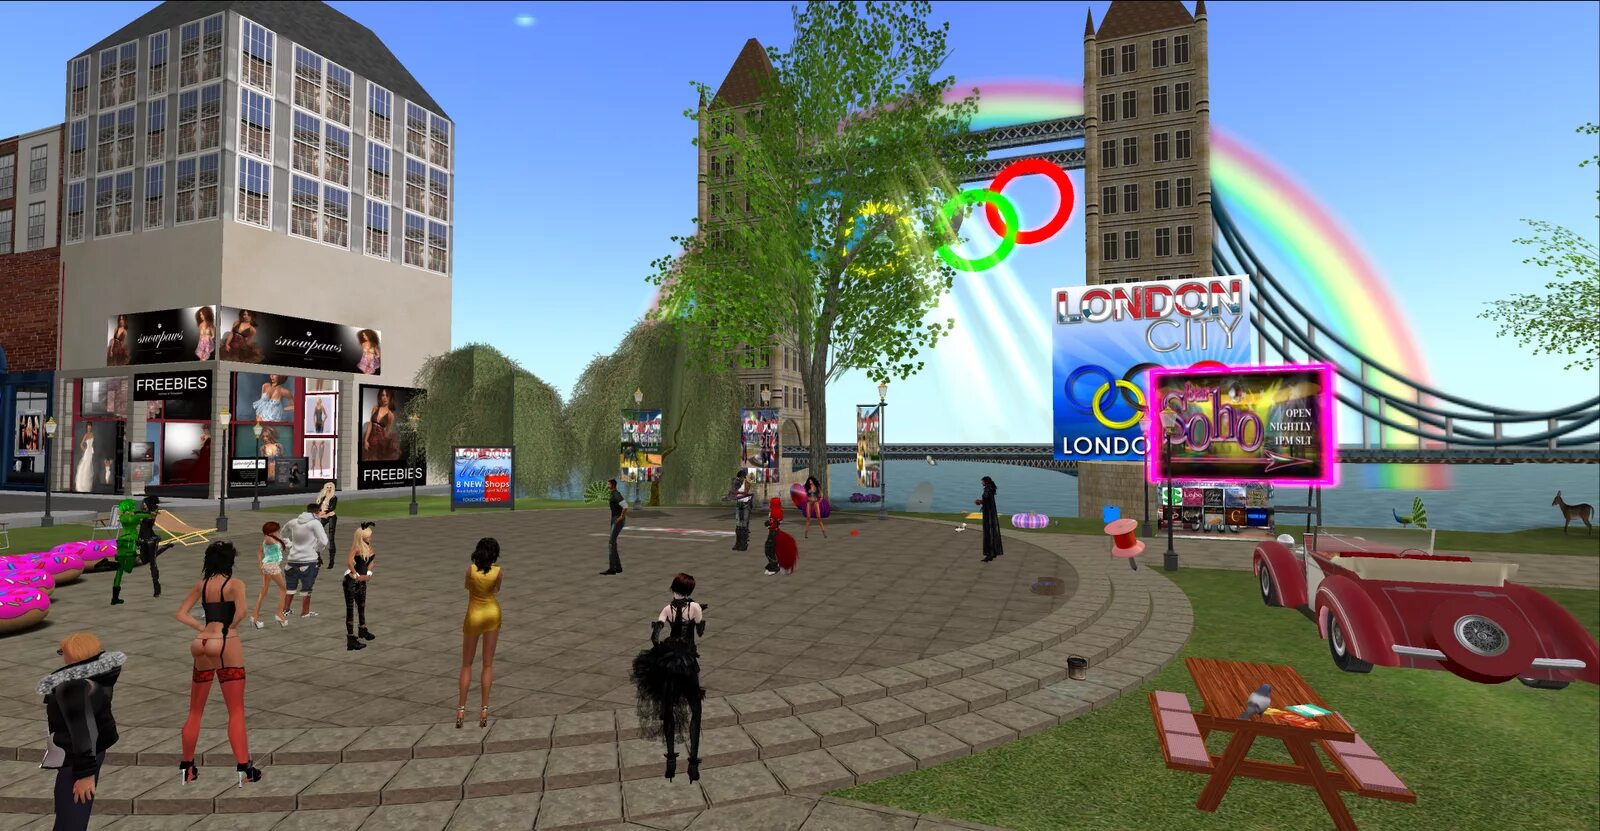 Second life worlds. Second Life 2003 игра. Second Life 2 игра. Виртуальный мир second Life. Second Life игра 2022.